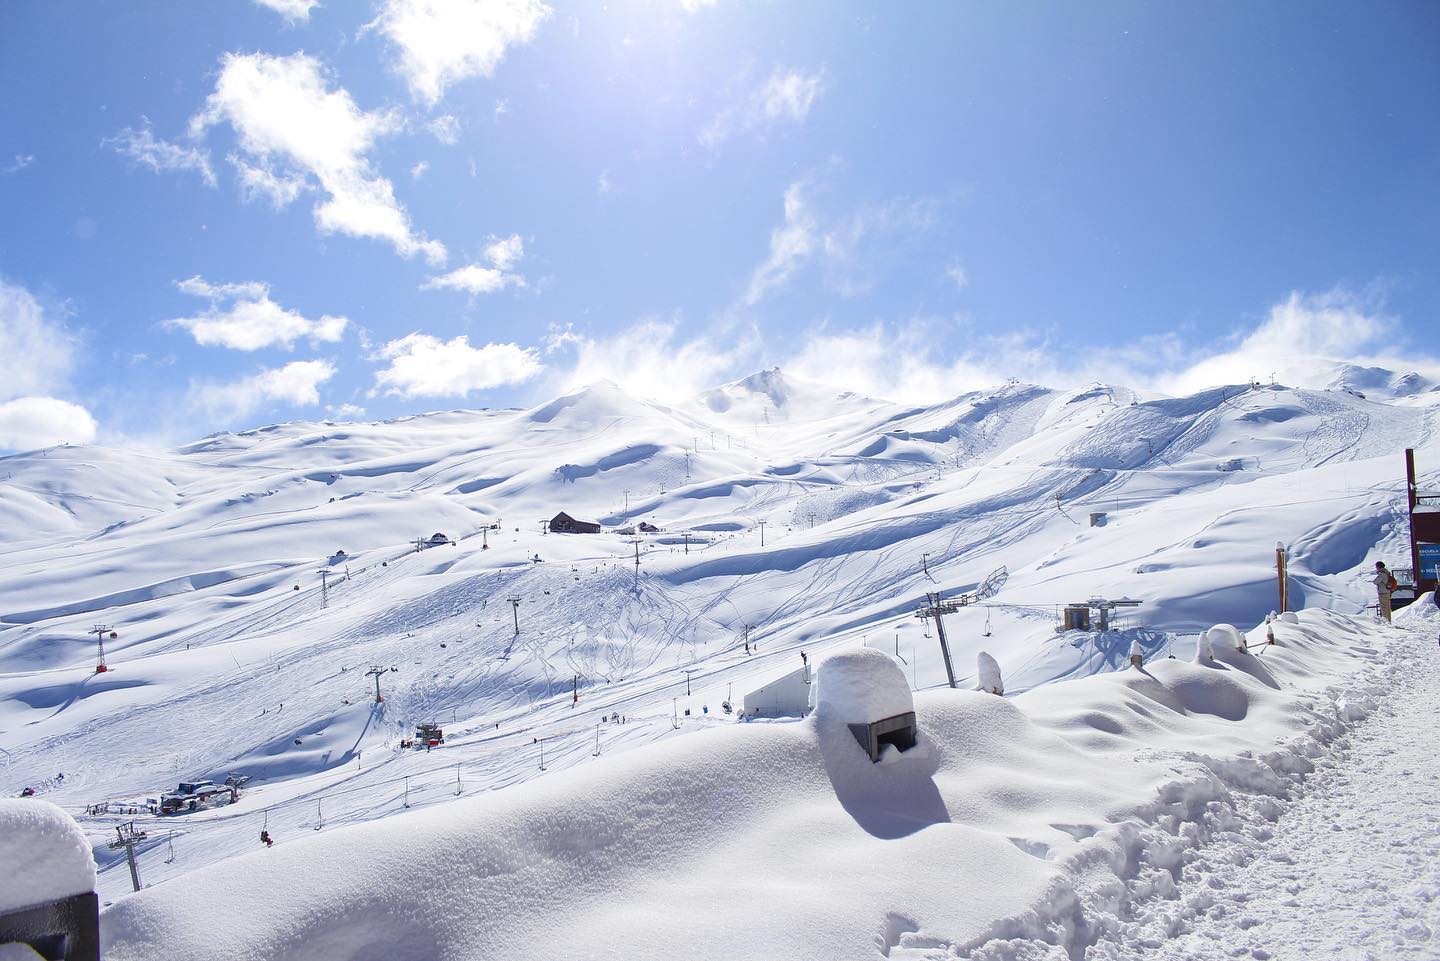 Valle Nevado presenta las novedades para la temporada, que inicia el 23 de junio